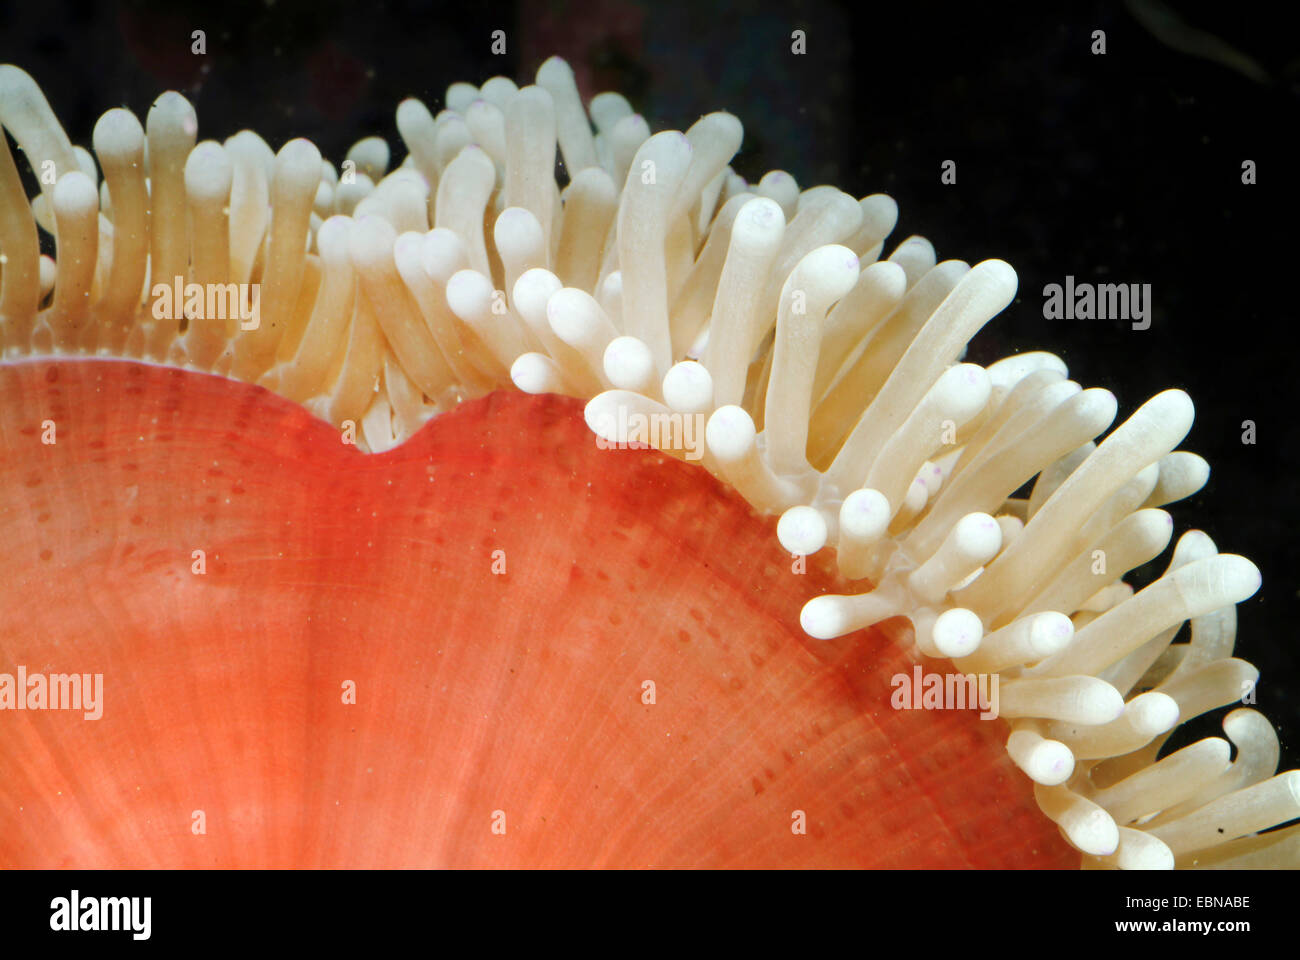 Anémone magnifique, magnifique anémone de mer (Heteractis magnifica), détail d'une anémone magnifique Banque D'Images